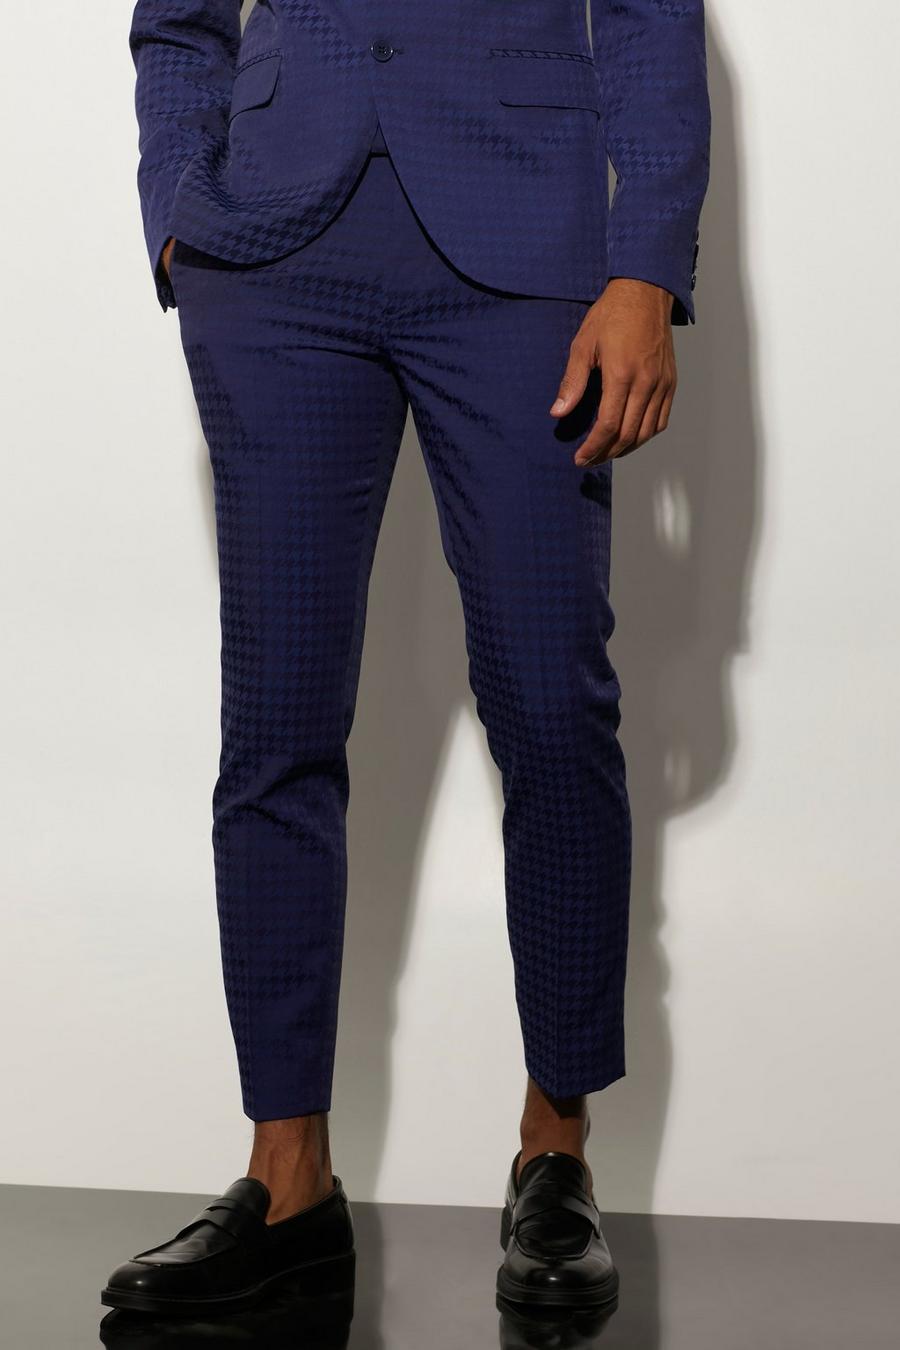 סגול viola מכנסי חליפה קרופ סקיני עם הדפס משבצות משוננות בשני צבעים